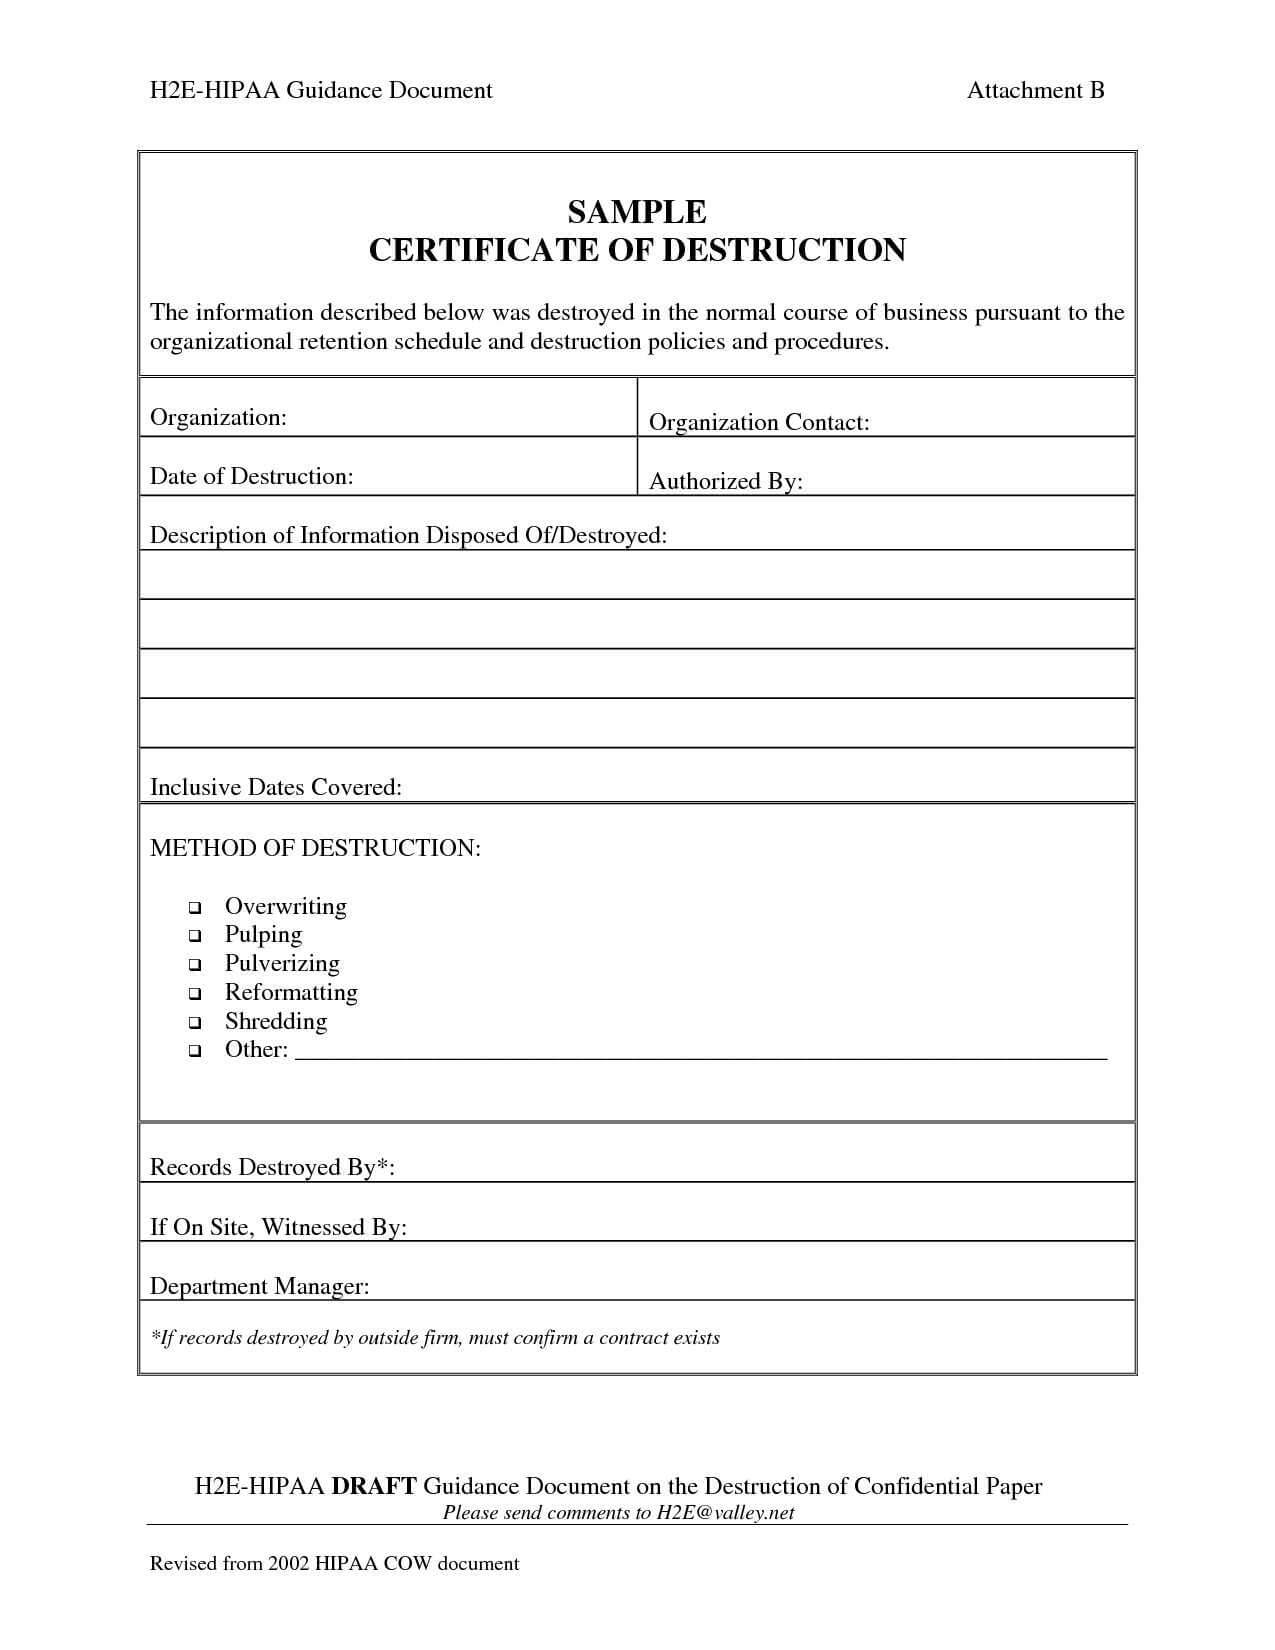 001 Template Ideas Certificate Of Destruction Frightening In Certificate Of Destruction Template